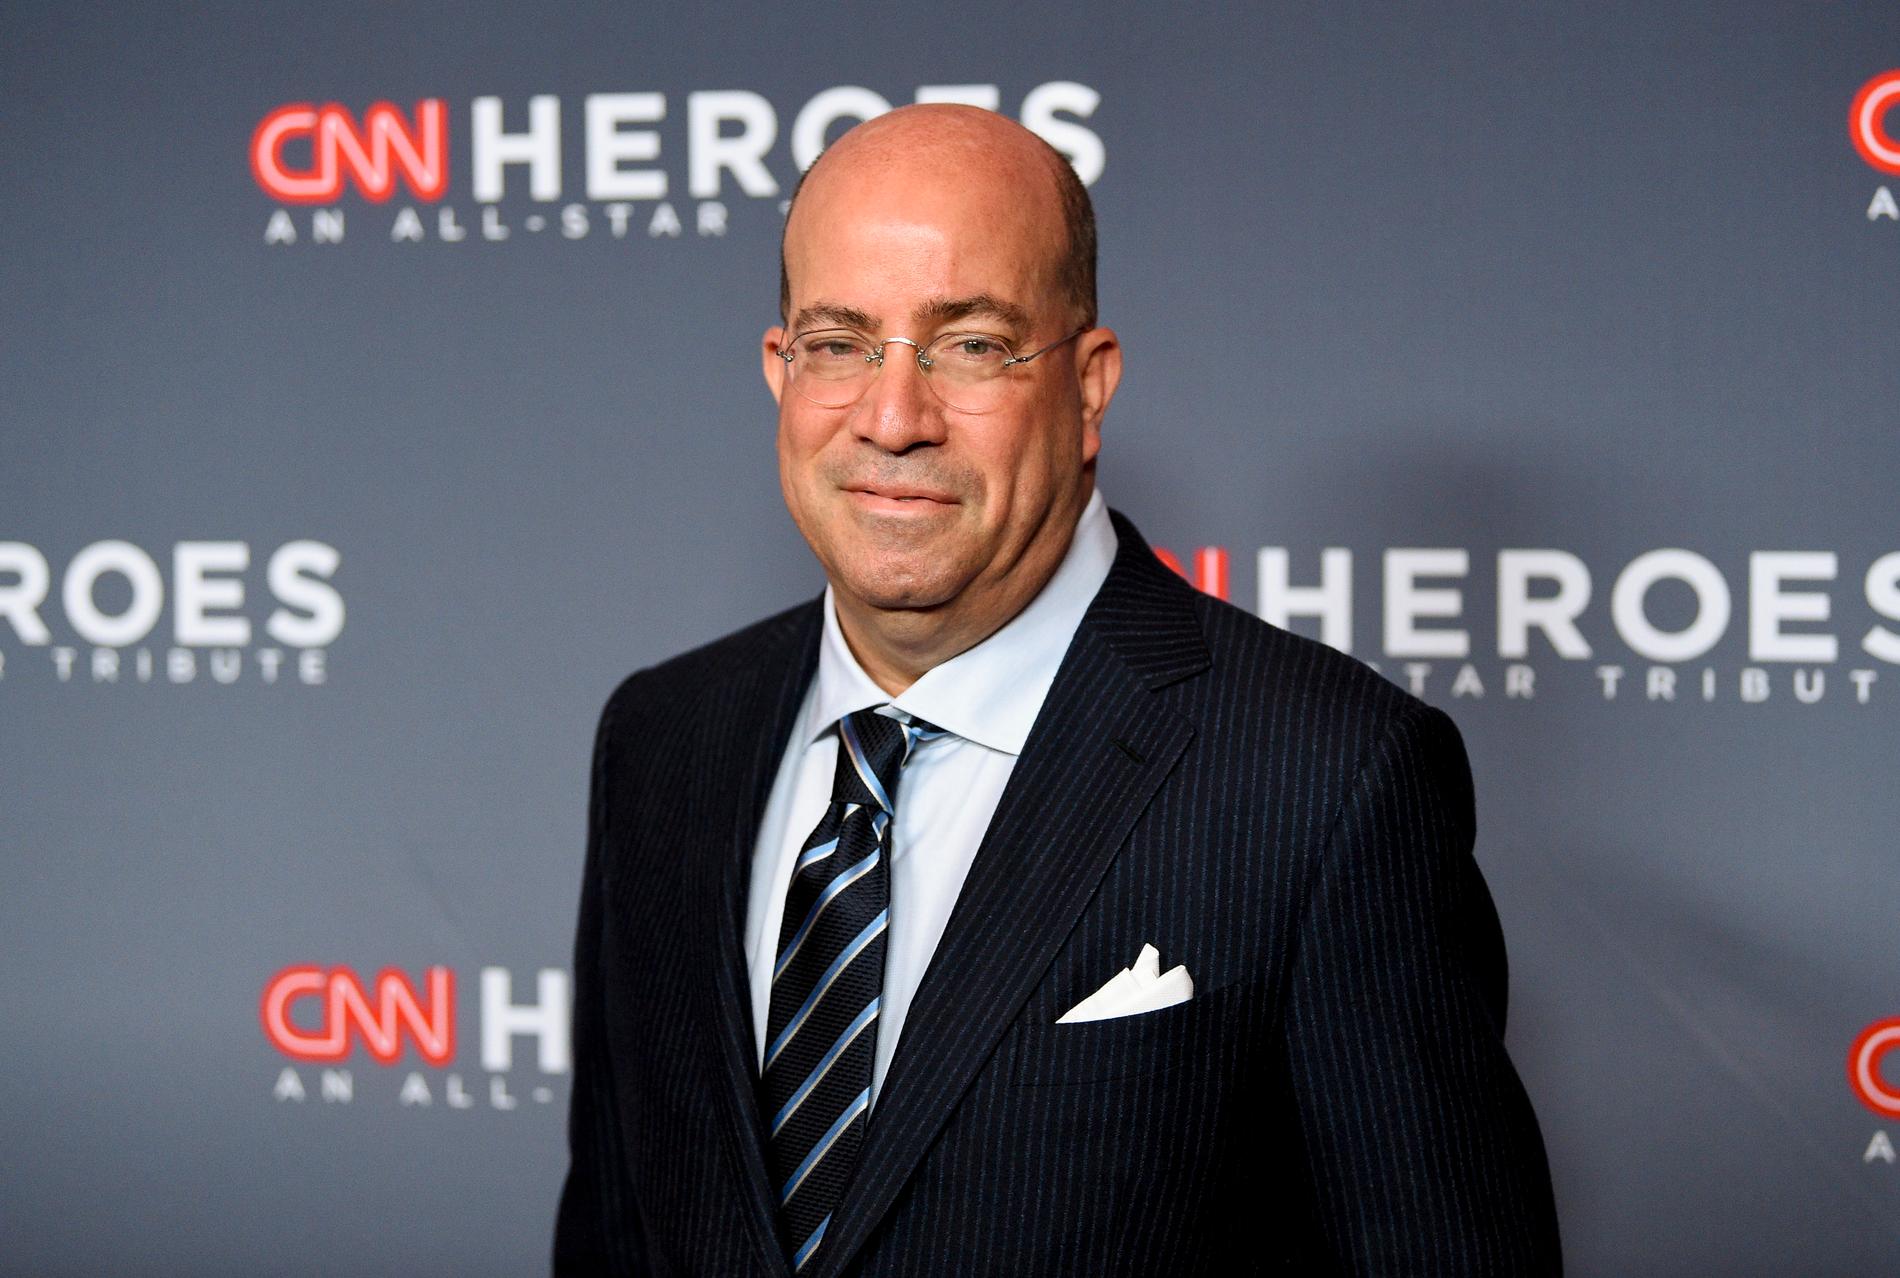 Jeffrey Adam Zucker, 56, har varit högste chef för CNN Worldwide sedan januari 2013. En tjänst han nu tvingas lämna. Han har tidigare  tidigare chef för NBC Universal.